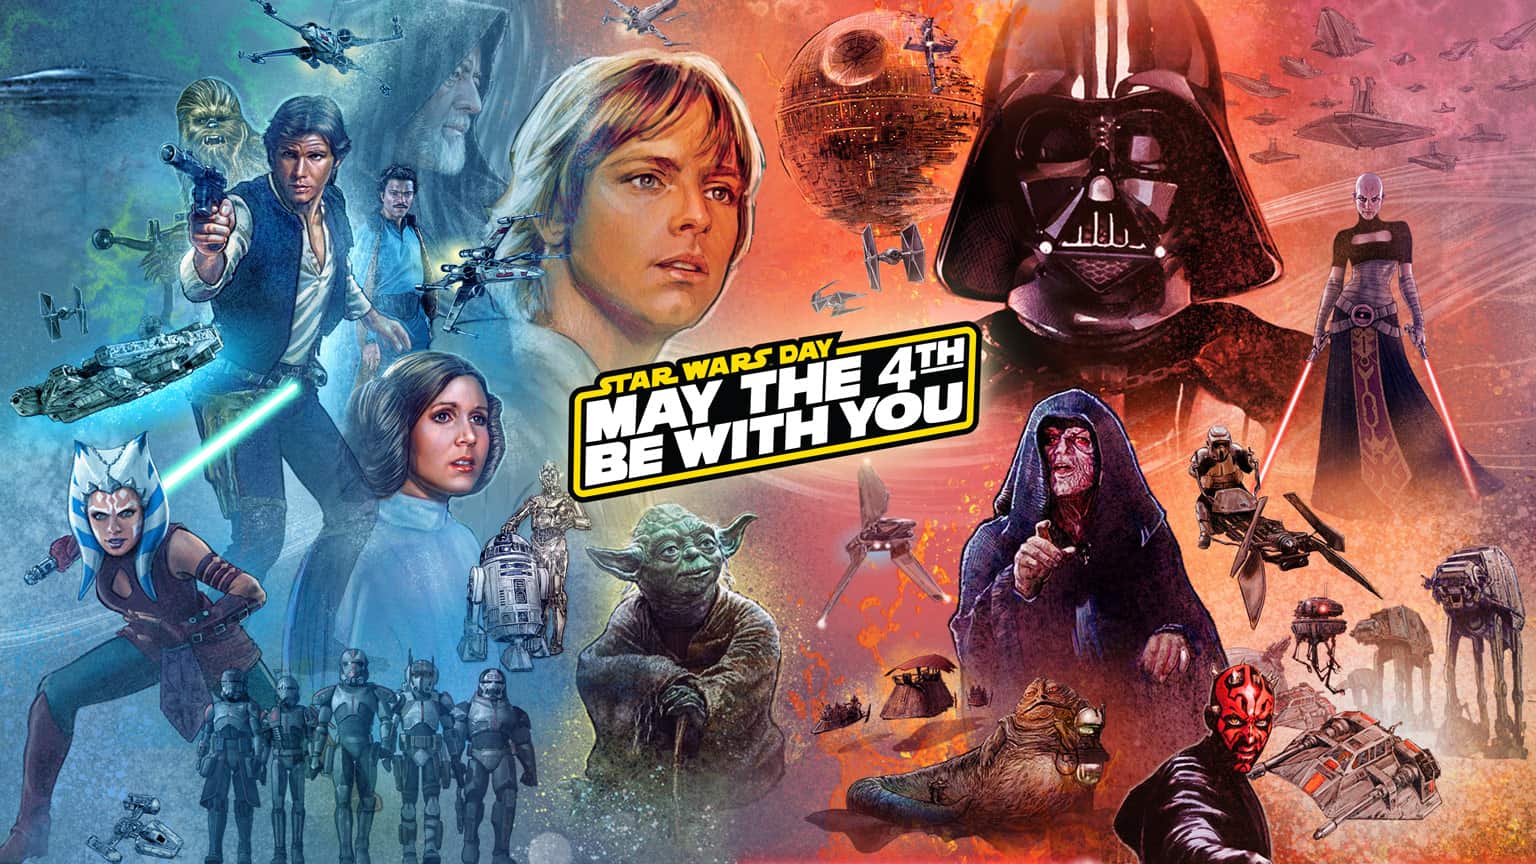 Poster Star Wars: Episódio I - A Ameaça Fantasma